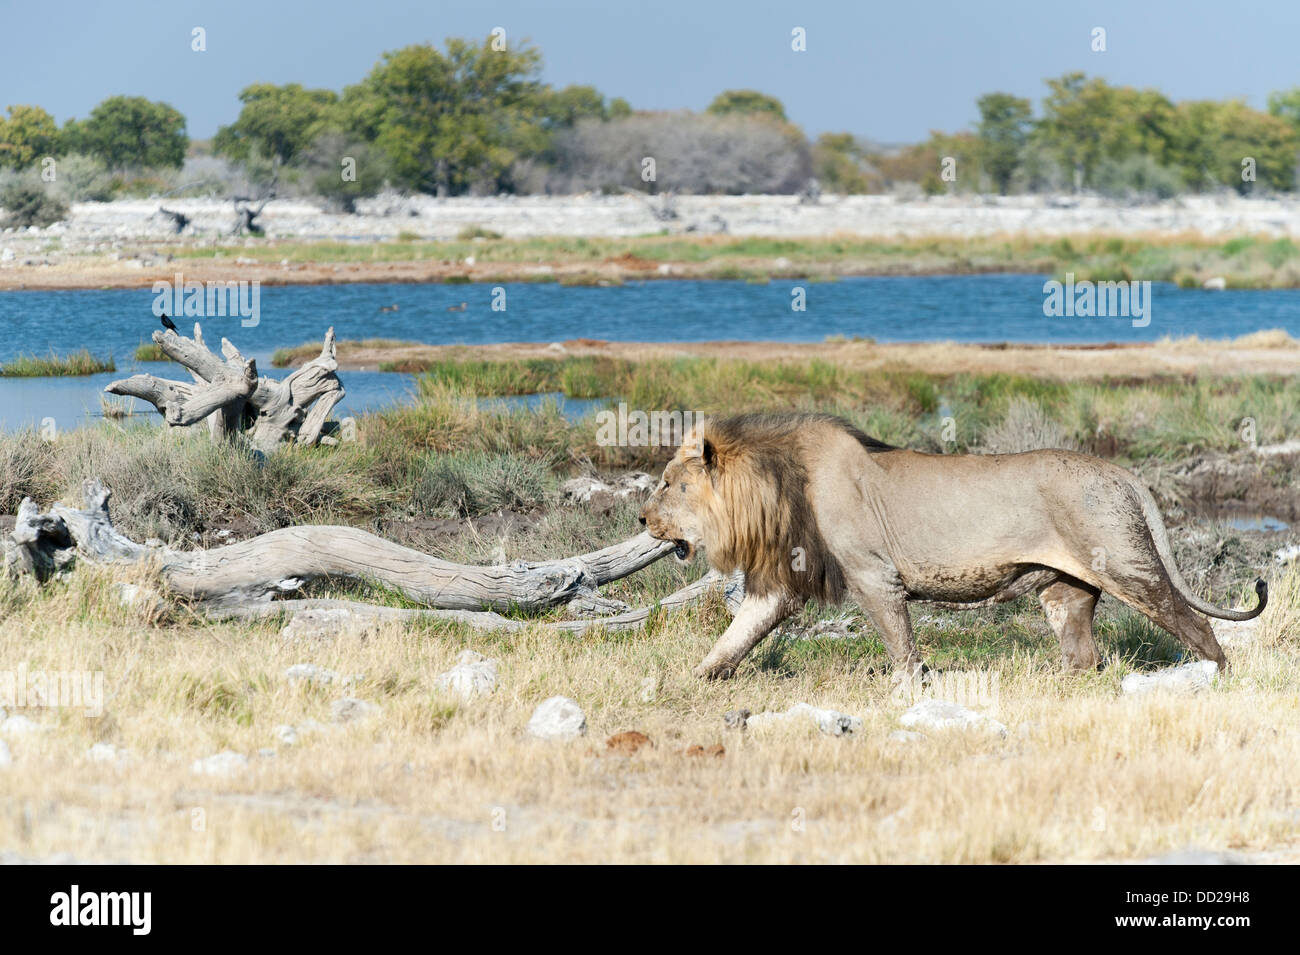 Male lion (Panthera leo) marcher le long d'un étang, Etosha Nationalpark, Namibie Banque D'Images